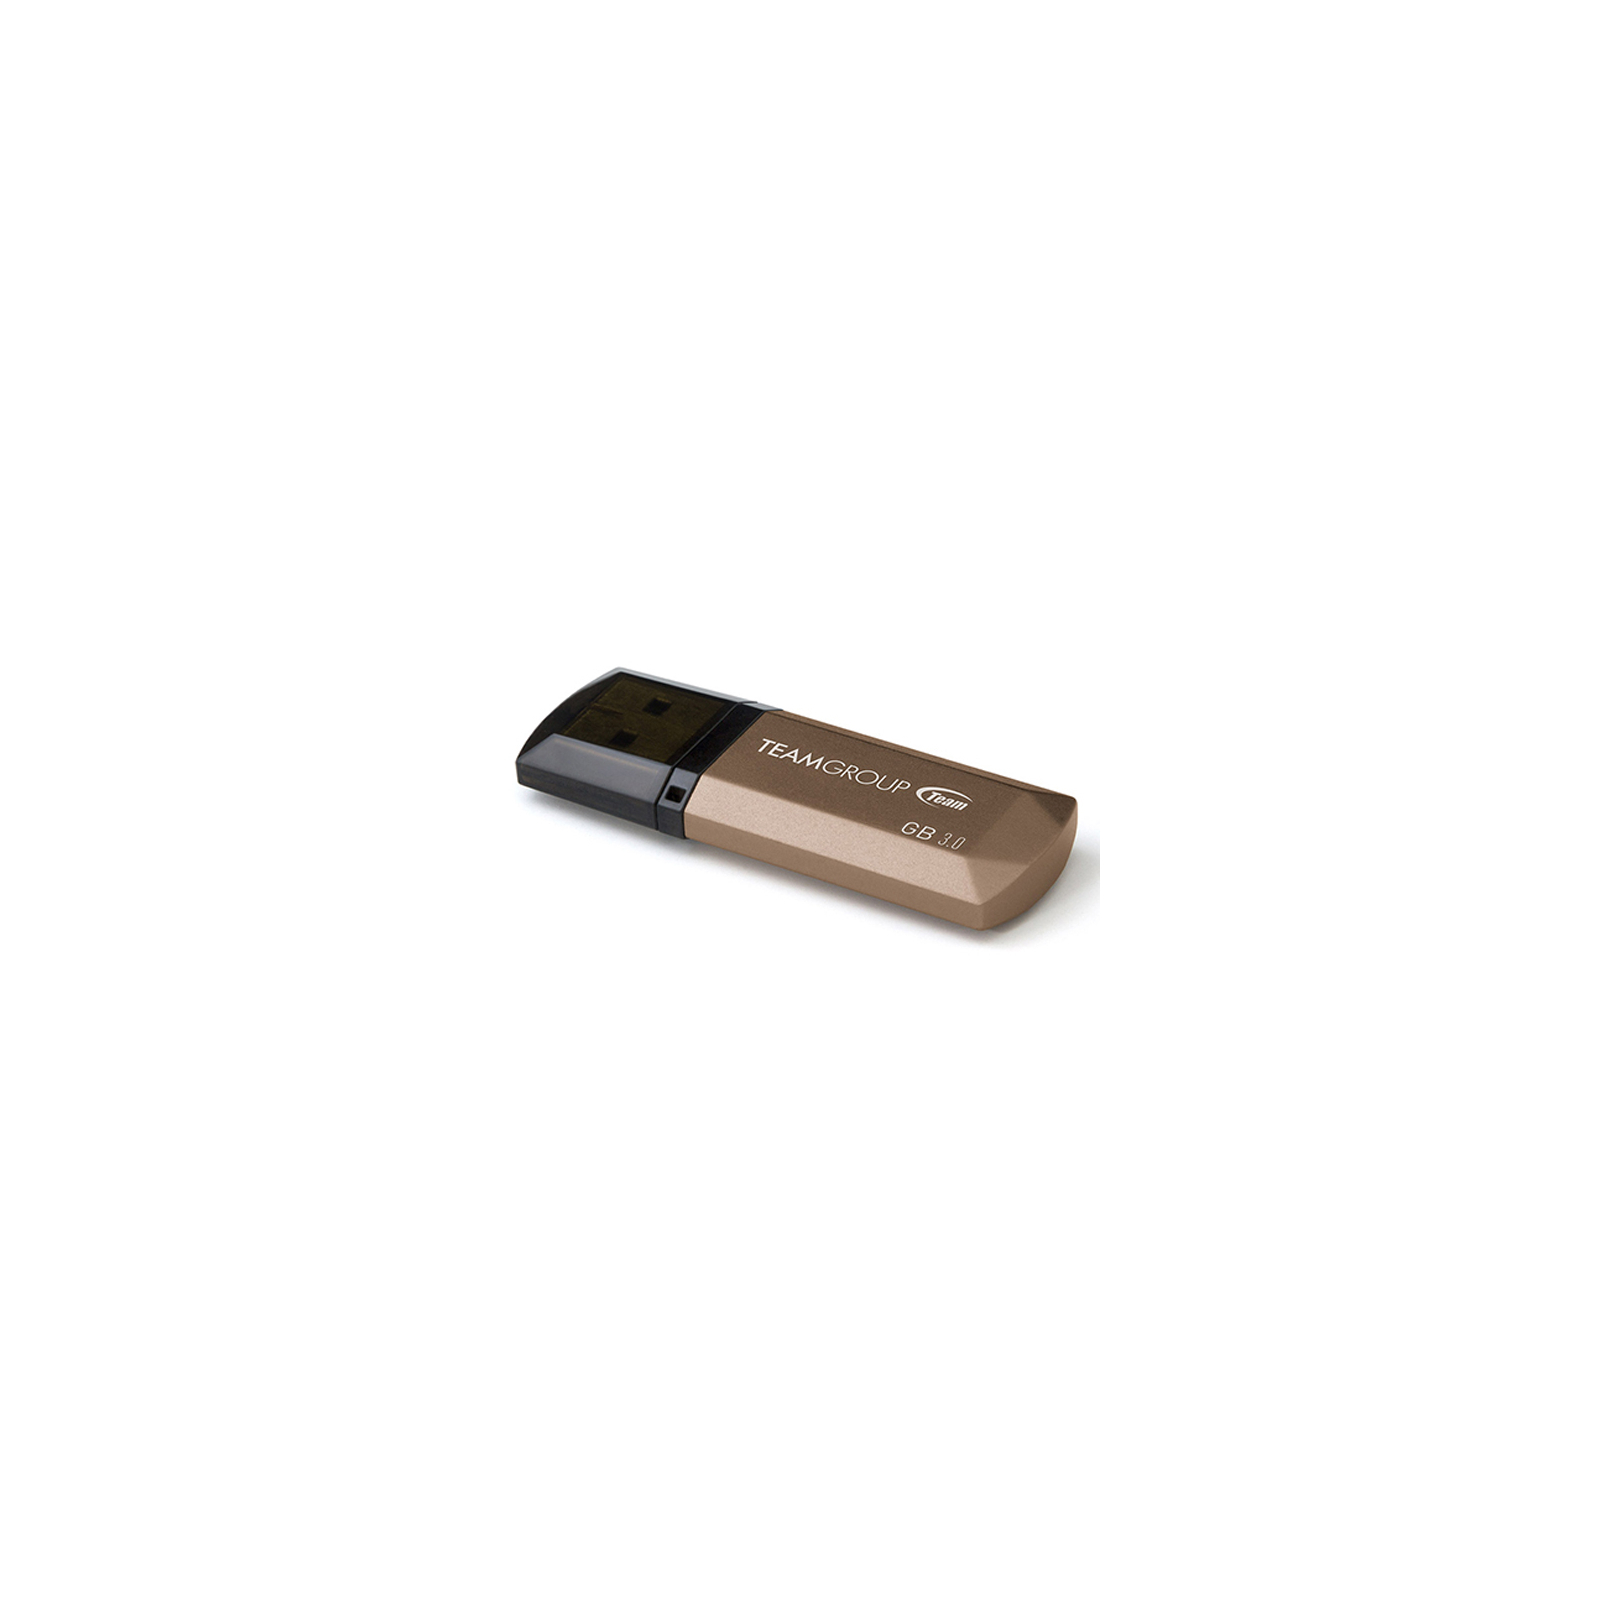 USB флеш накопитель Team 32GB C155 Golden USB 3.0 (TC155332GD01) изображение 2